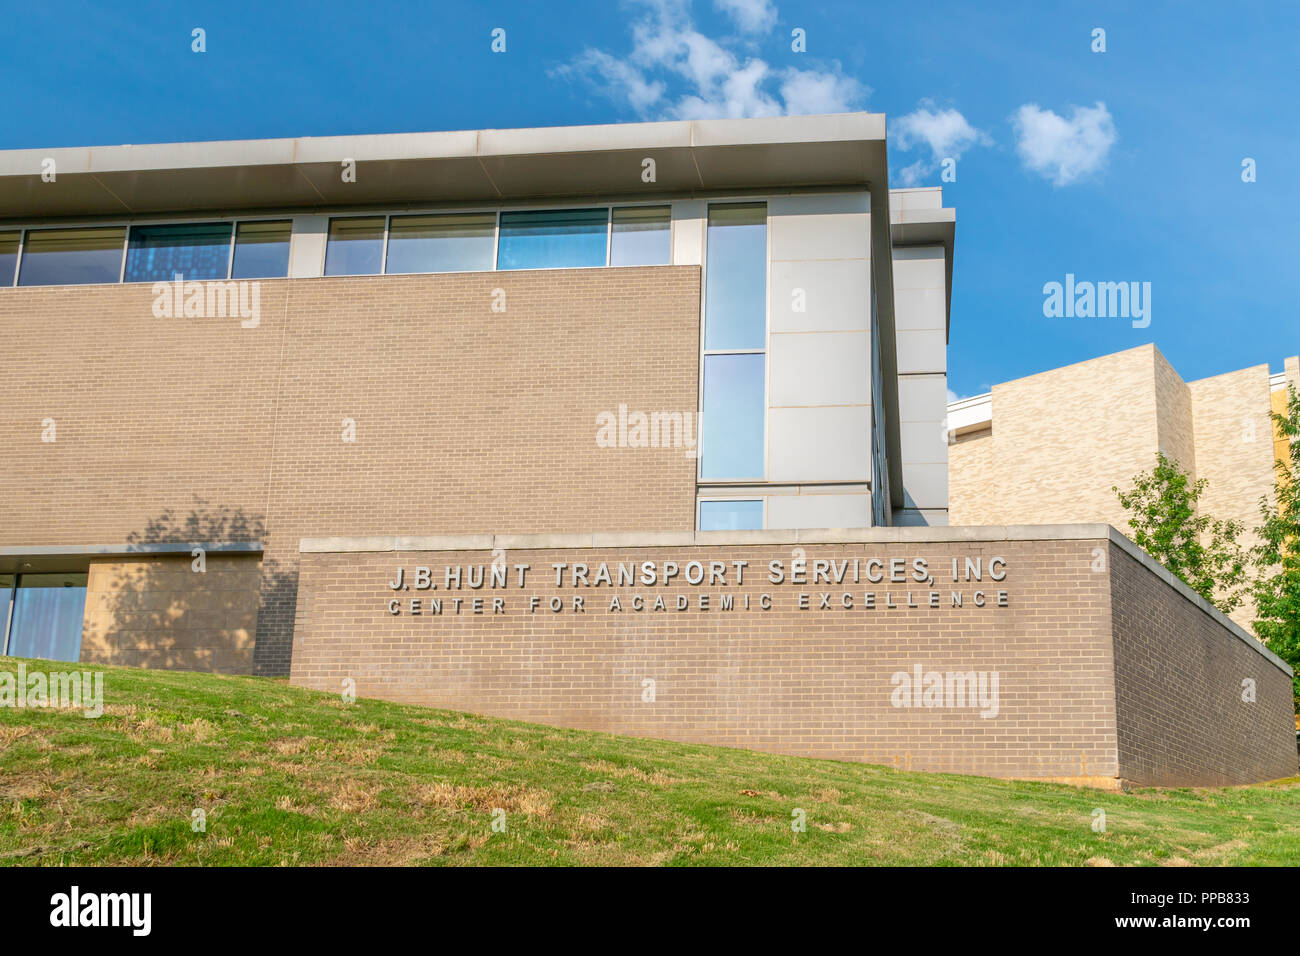 FAYETTEVILLE, AR/USA - Juni 8, 2018: J.B. Jagd Zentrum für wissenschaftliche Exzellenz auf dem Campus der Universität von Arkansas. Stockfoto